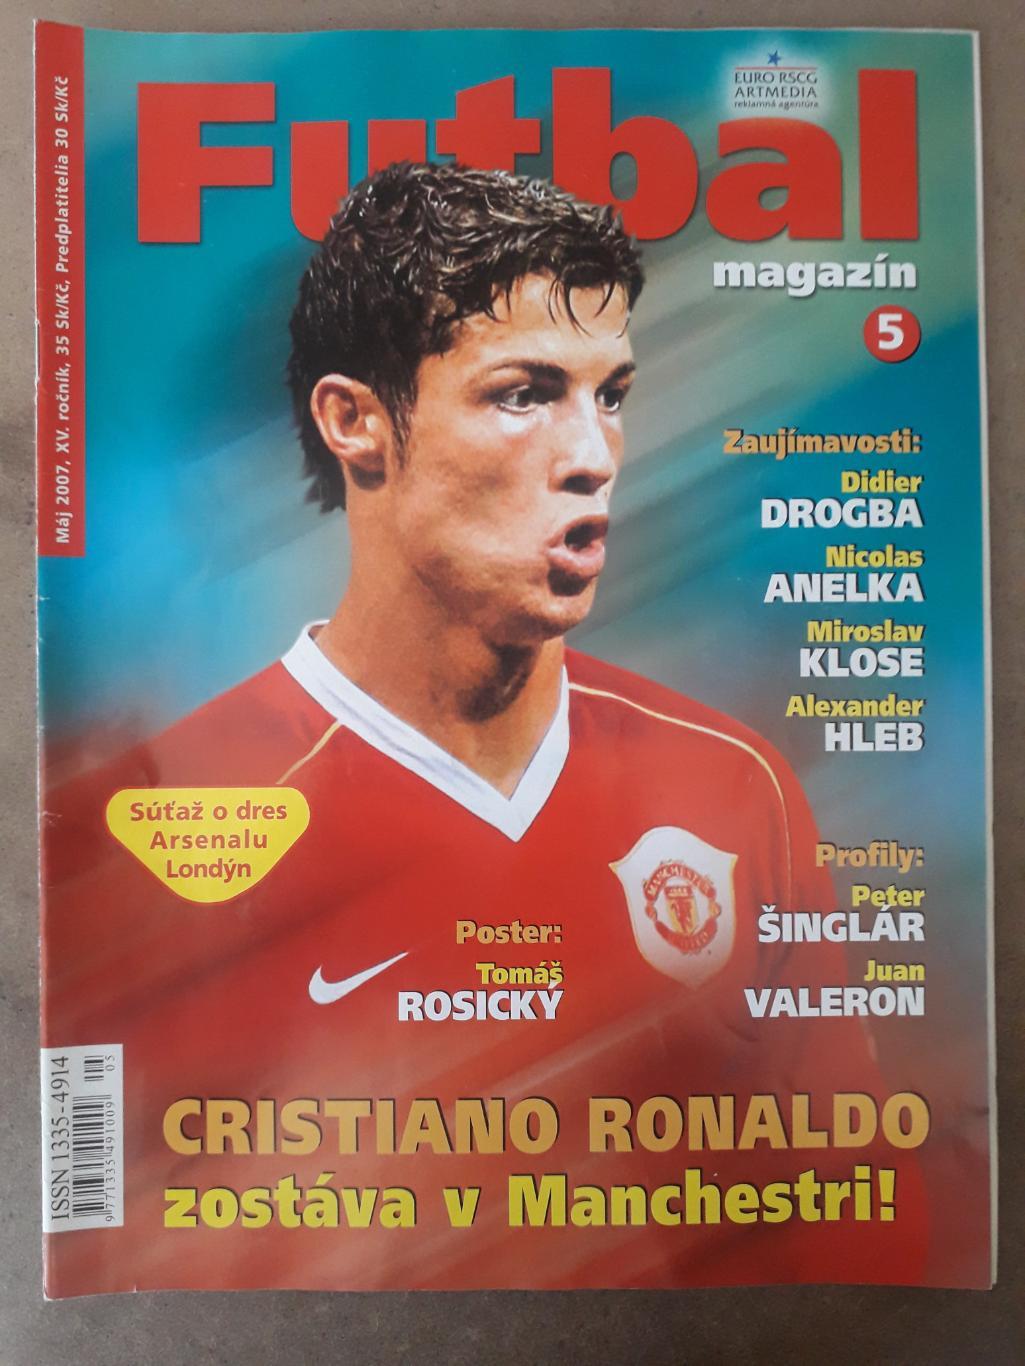 Словацкий Futbal magazin 5/2007